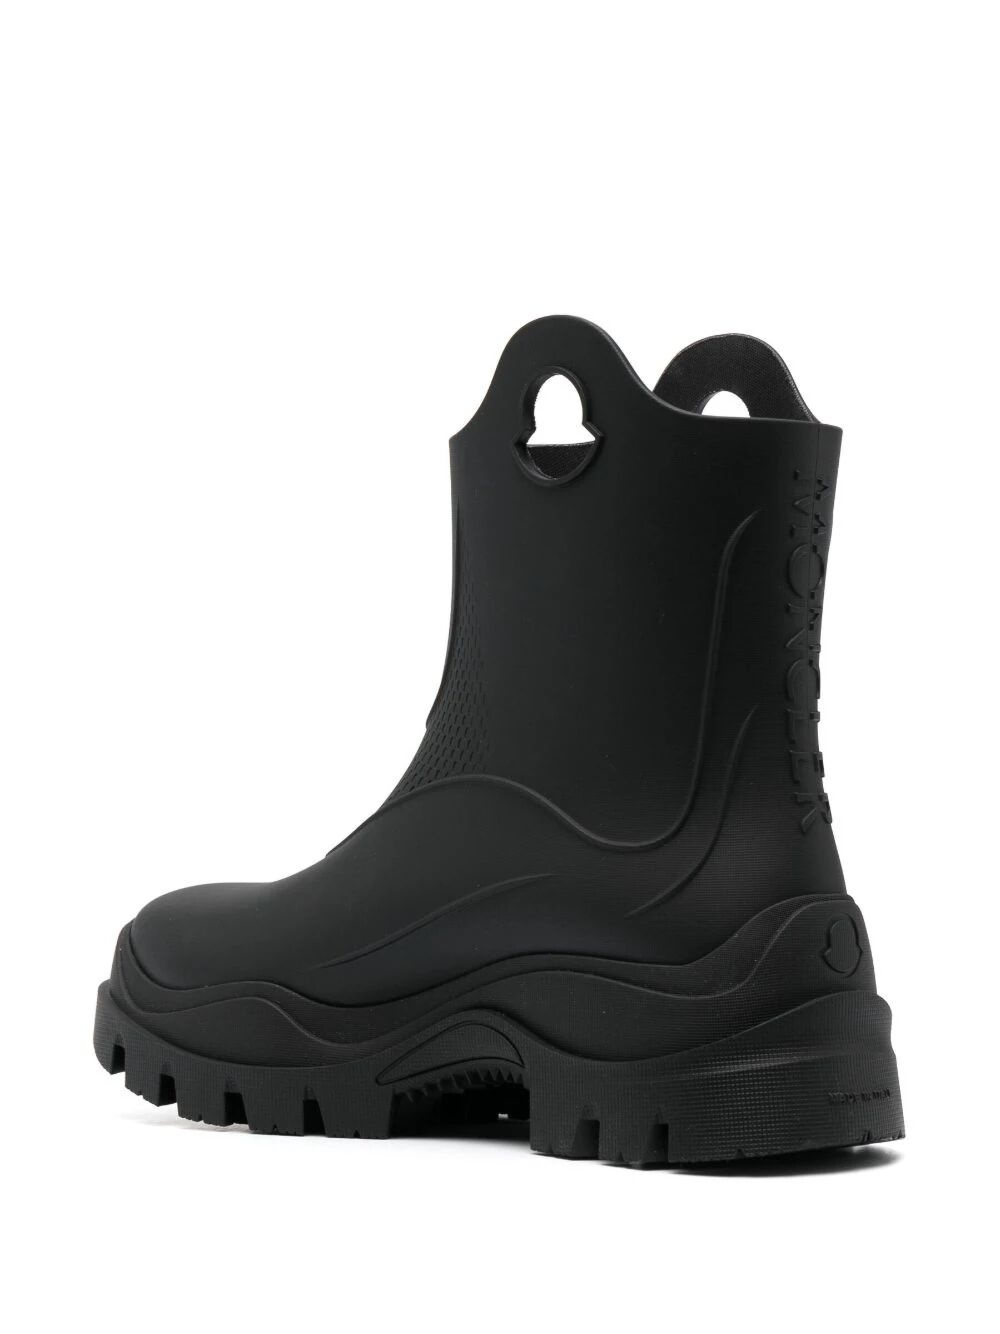 Misty rain boots - 3